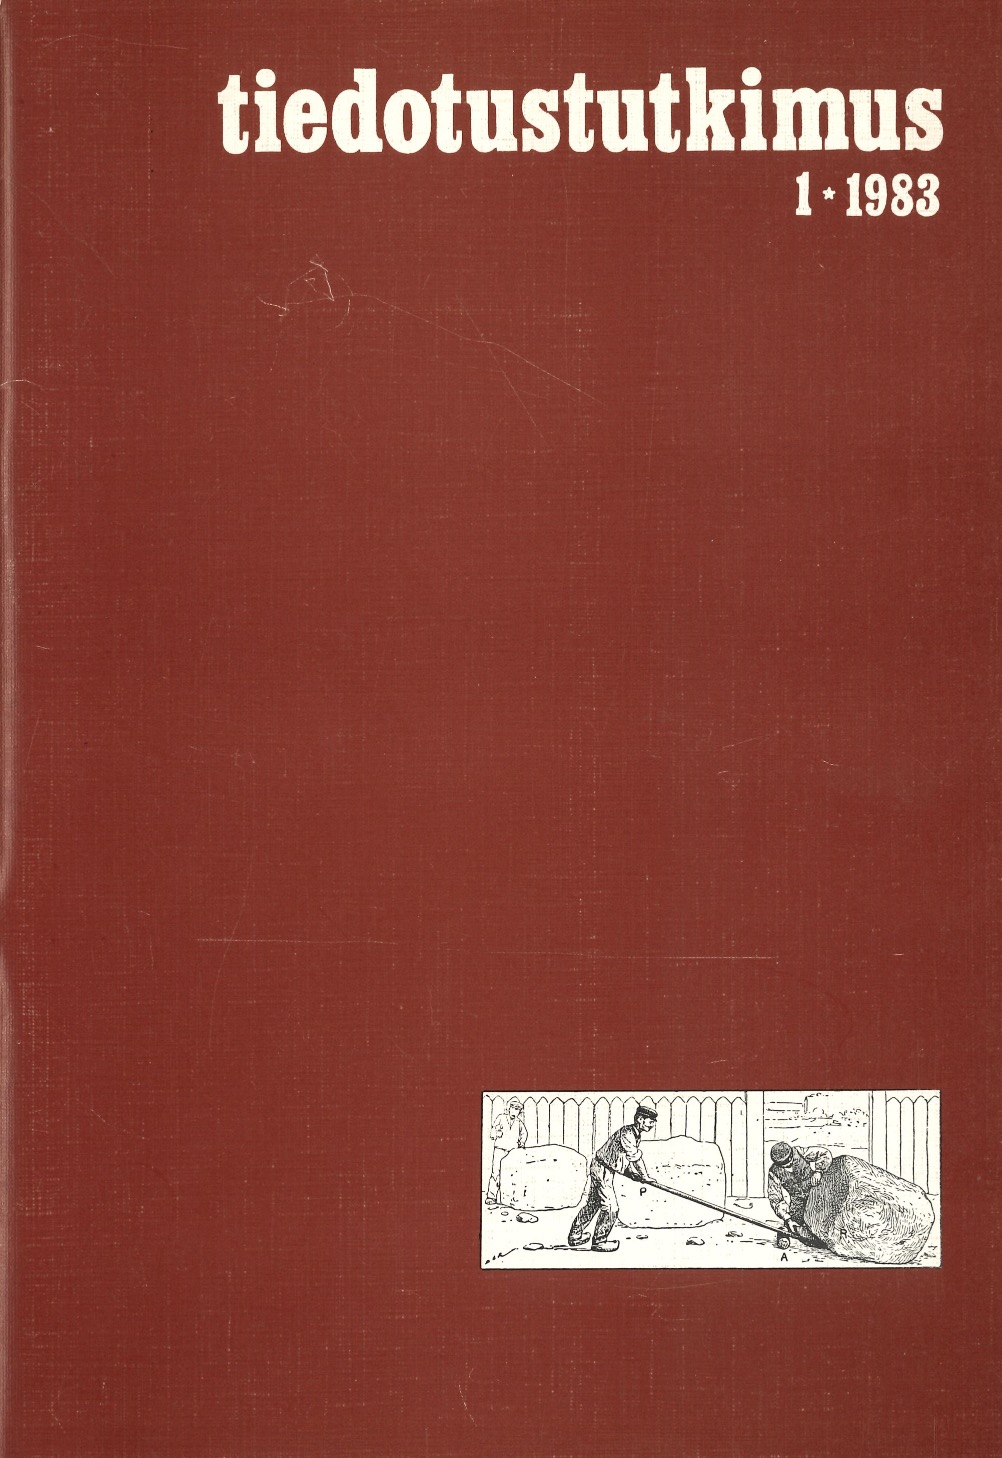 					Näytä Vol 6 Nro 1 (1983)
				